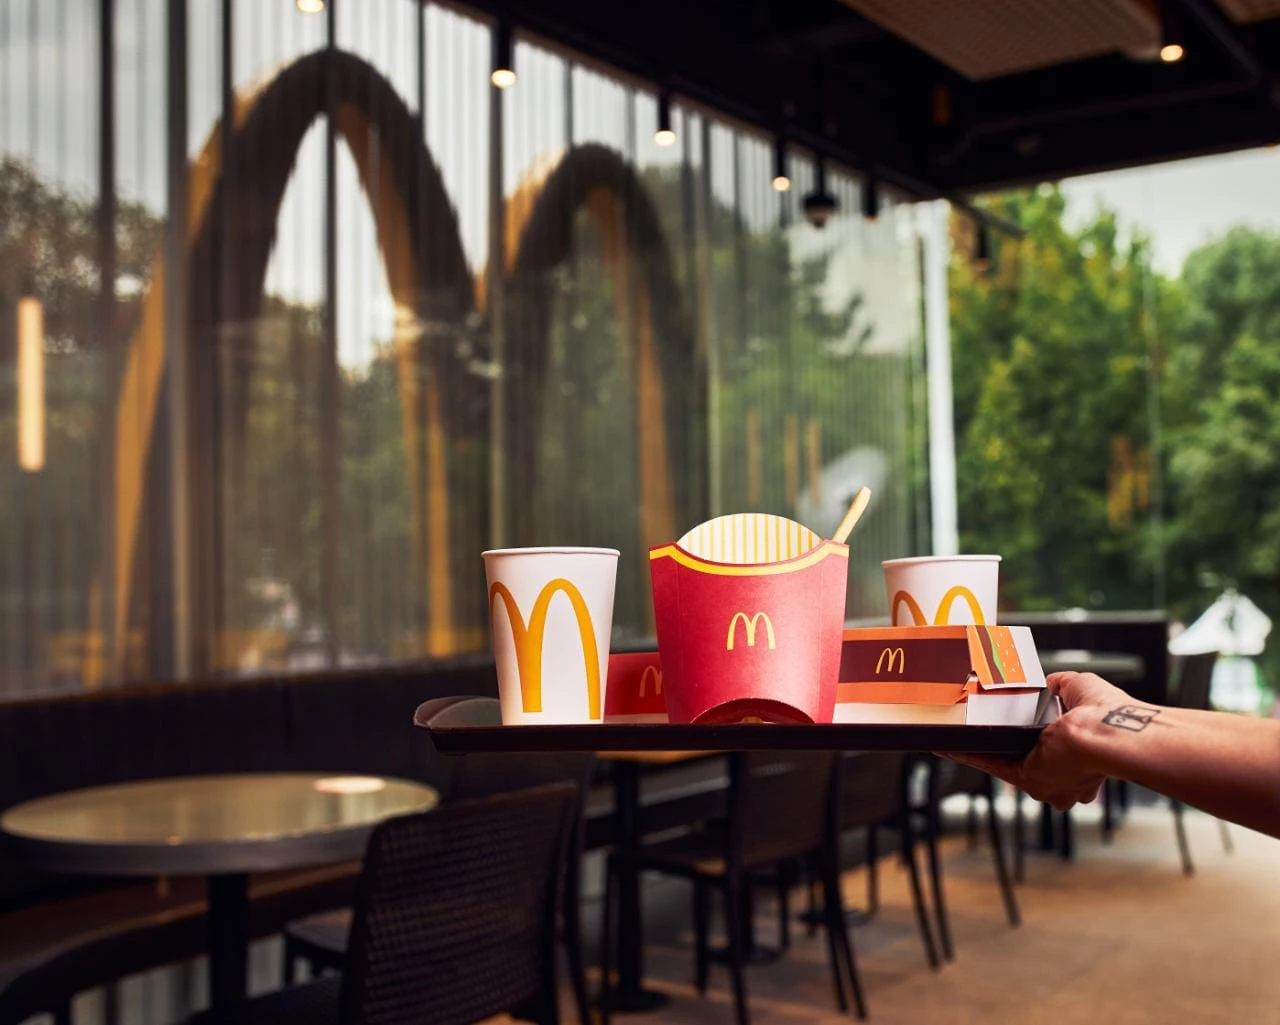 Cuánto gana un empleado de McDonald's en Argentina y cuánto gana uno en Estados Unidos